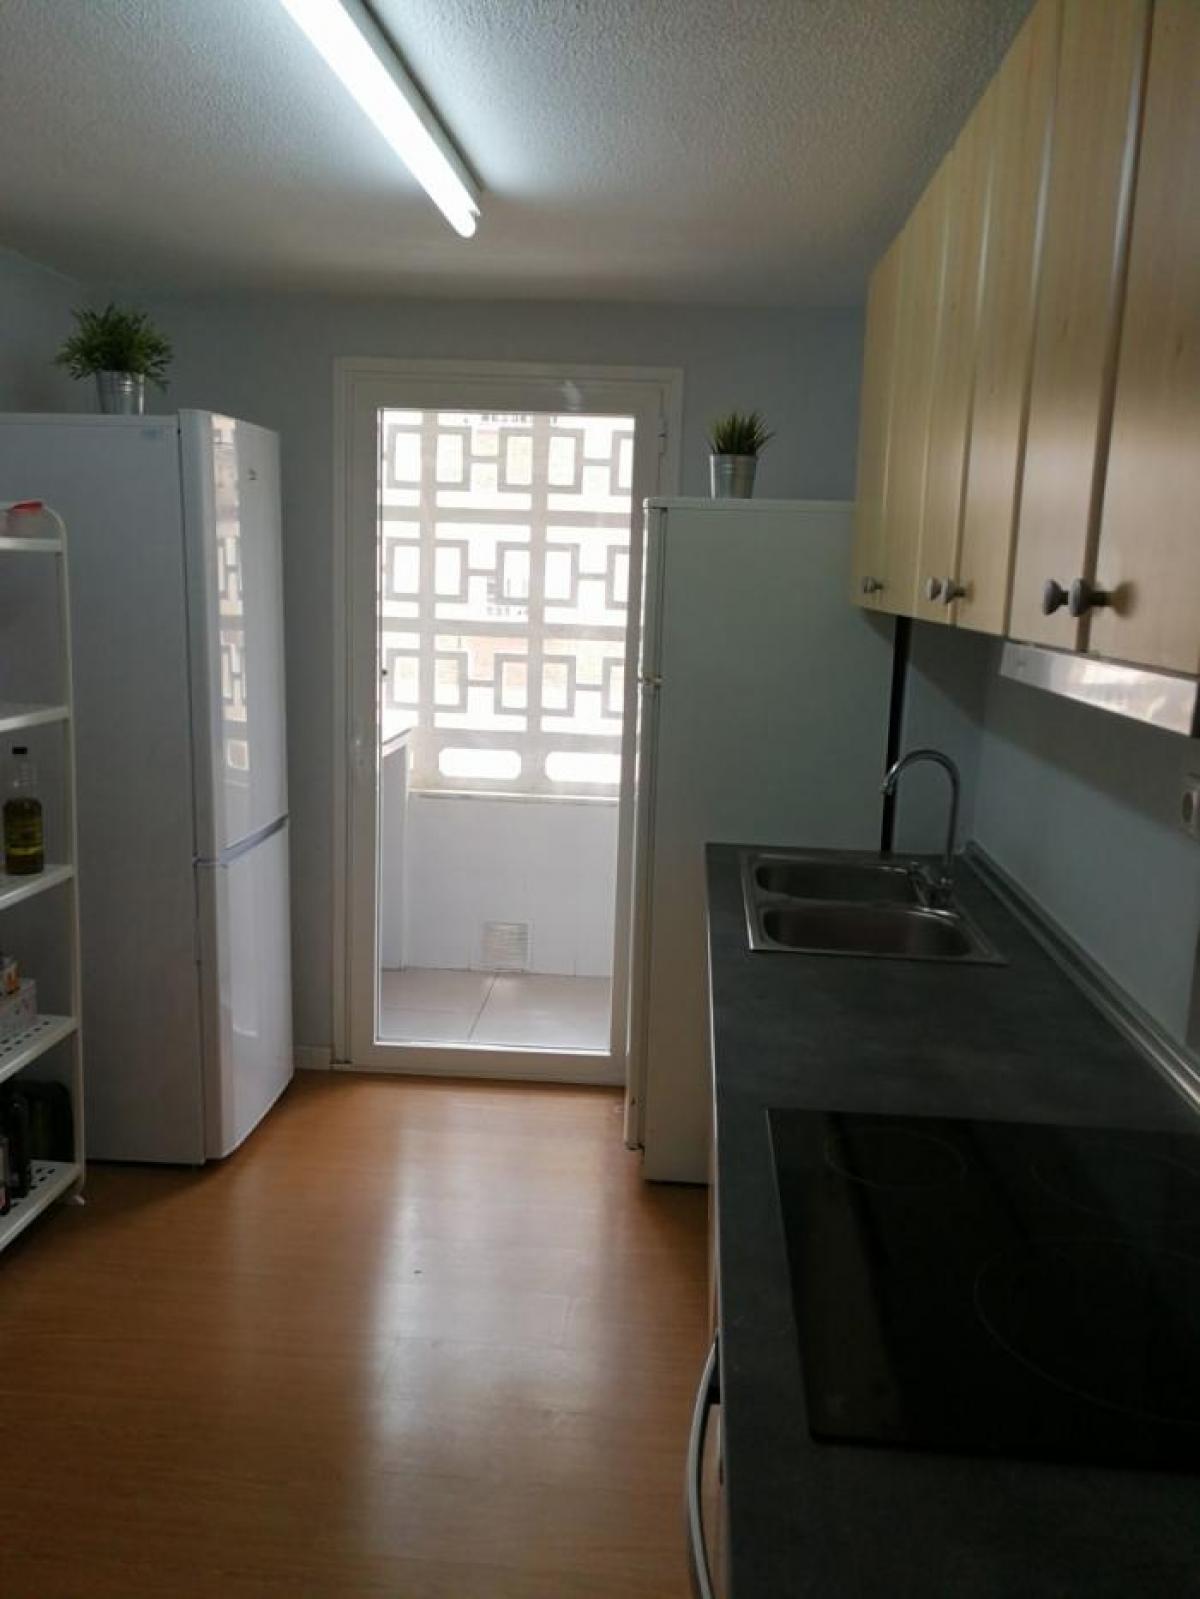 Picture of Apartment For Rent in Almeria, Almeria, Spain